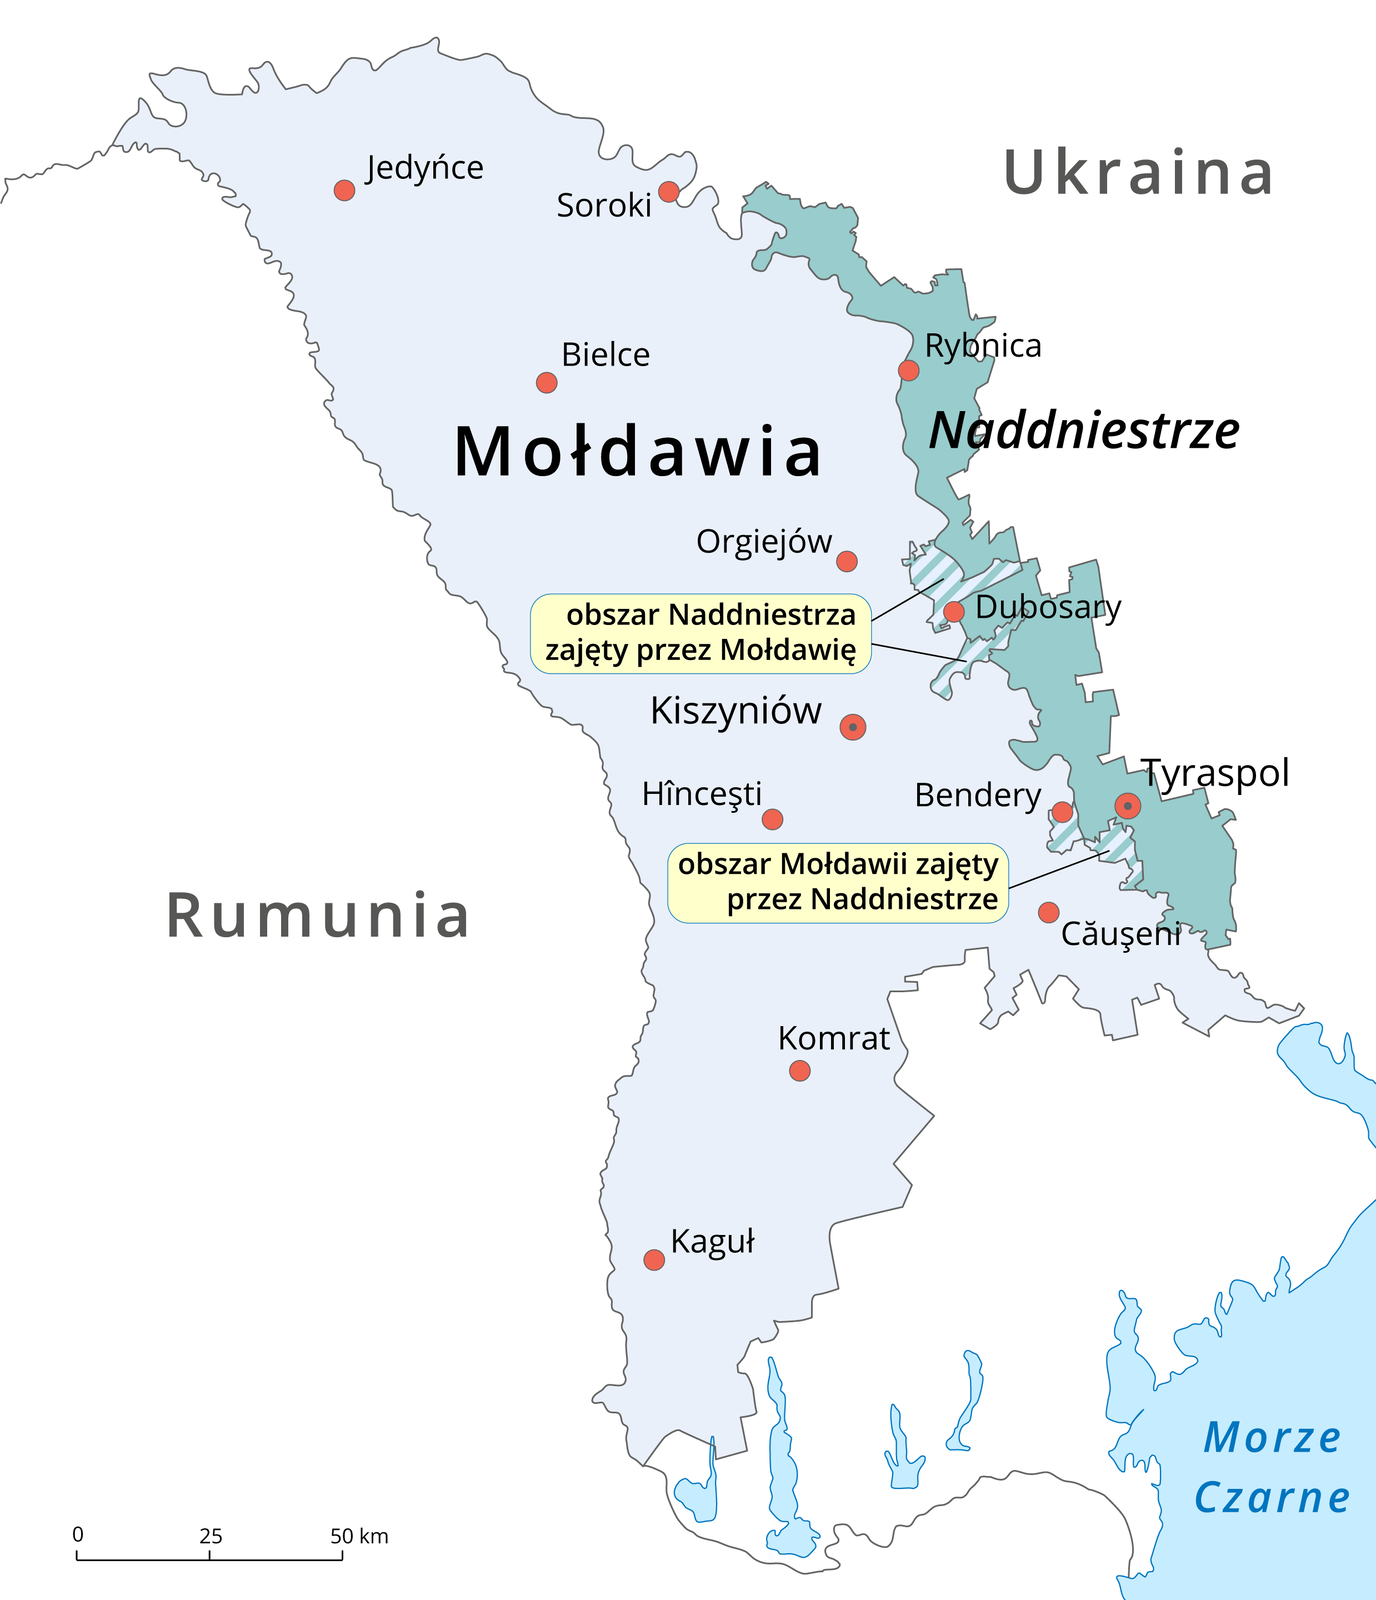 Na ilustracji mapa polityczna. Mołdawia oznaczona kolorem niebieskim, od wschodu graniczące z nią Naddniestrze oznaczone kolorem turkusowym. Na granicy Mołdawii i Naddniestrza dwa obszary kreskowane. Wyżej obszar Naddniestrza zajęty przez Mołdawię, niżej obszar Mołdawii zajęty przez Naddniestrze. Od zachodu Mołdawii – Rumunia, od wschodu Naddniestrza – Ukraina.